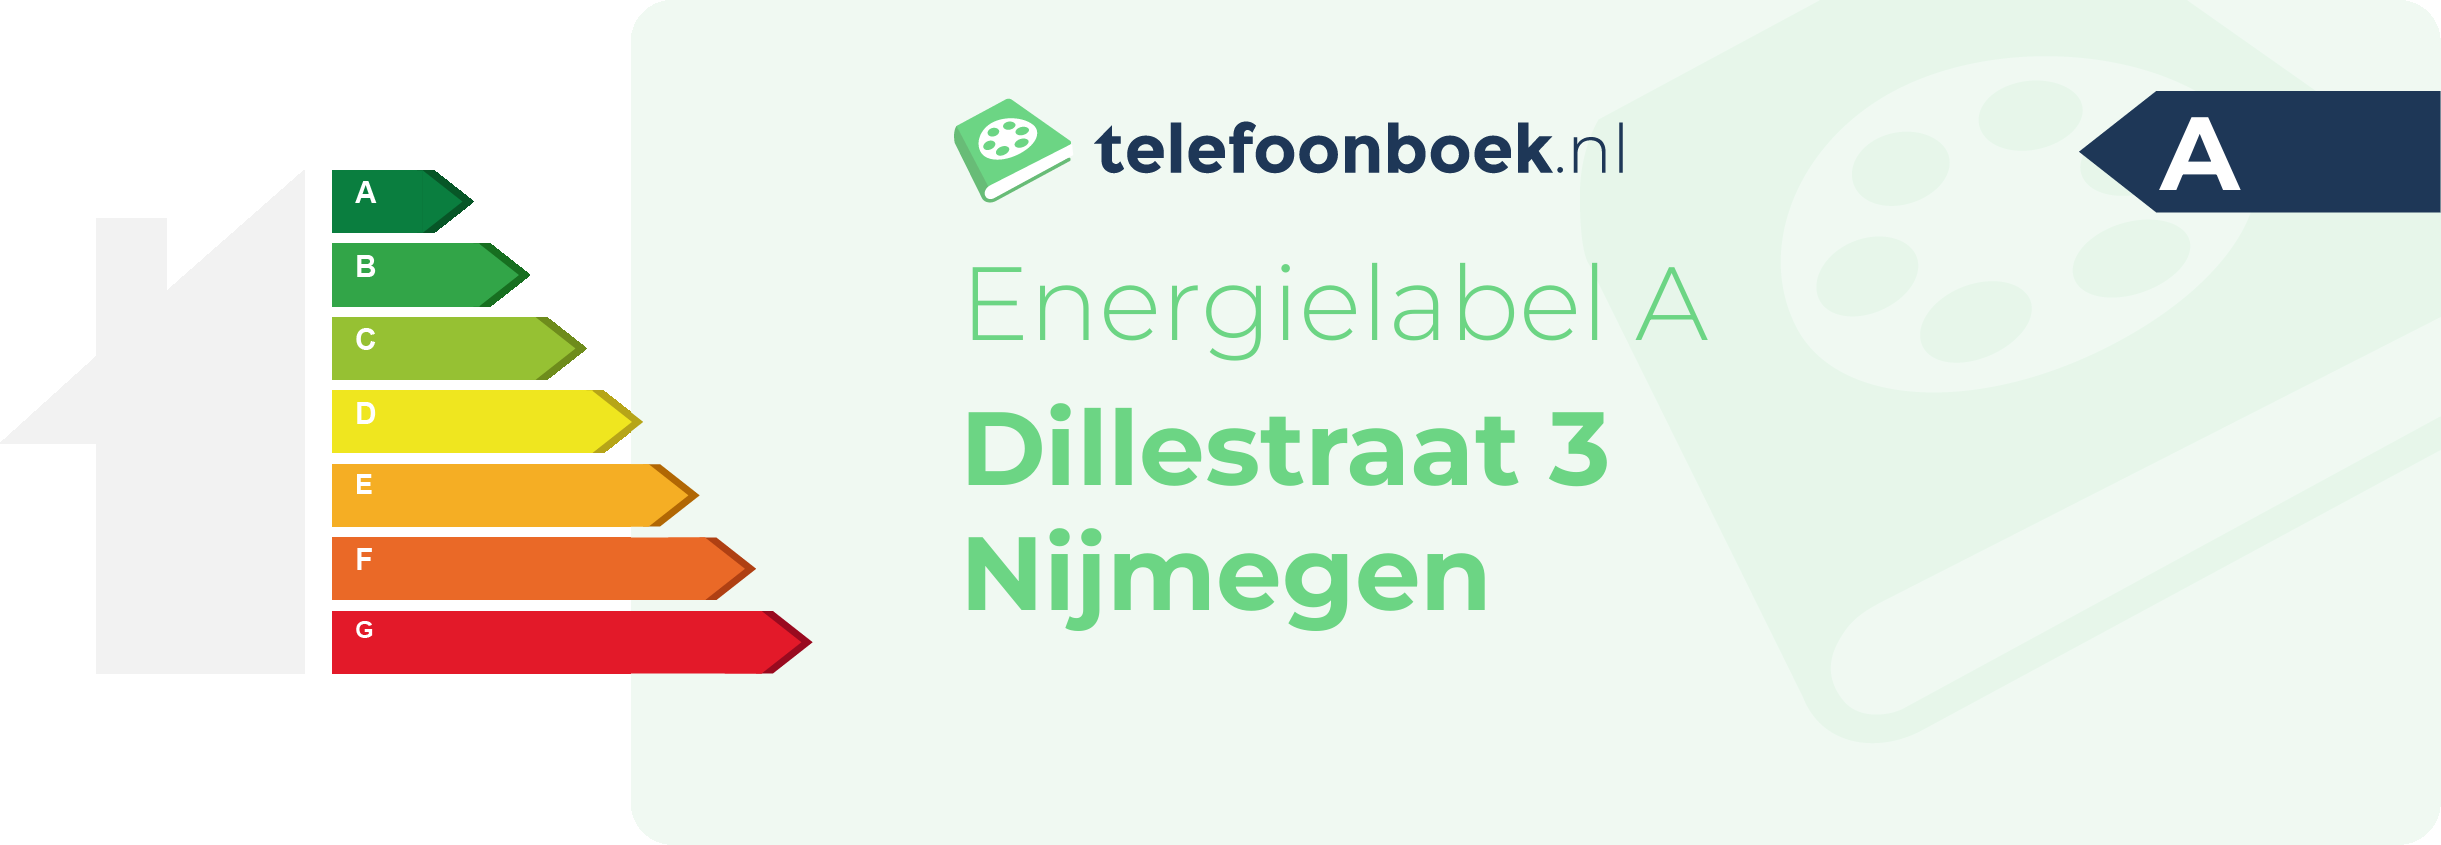 Energielabel Dillestraat 3 Nijmegen